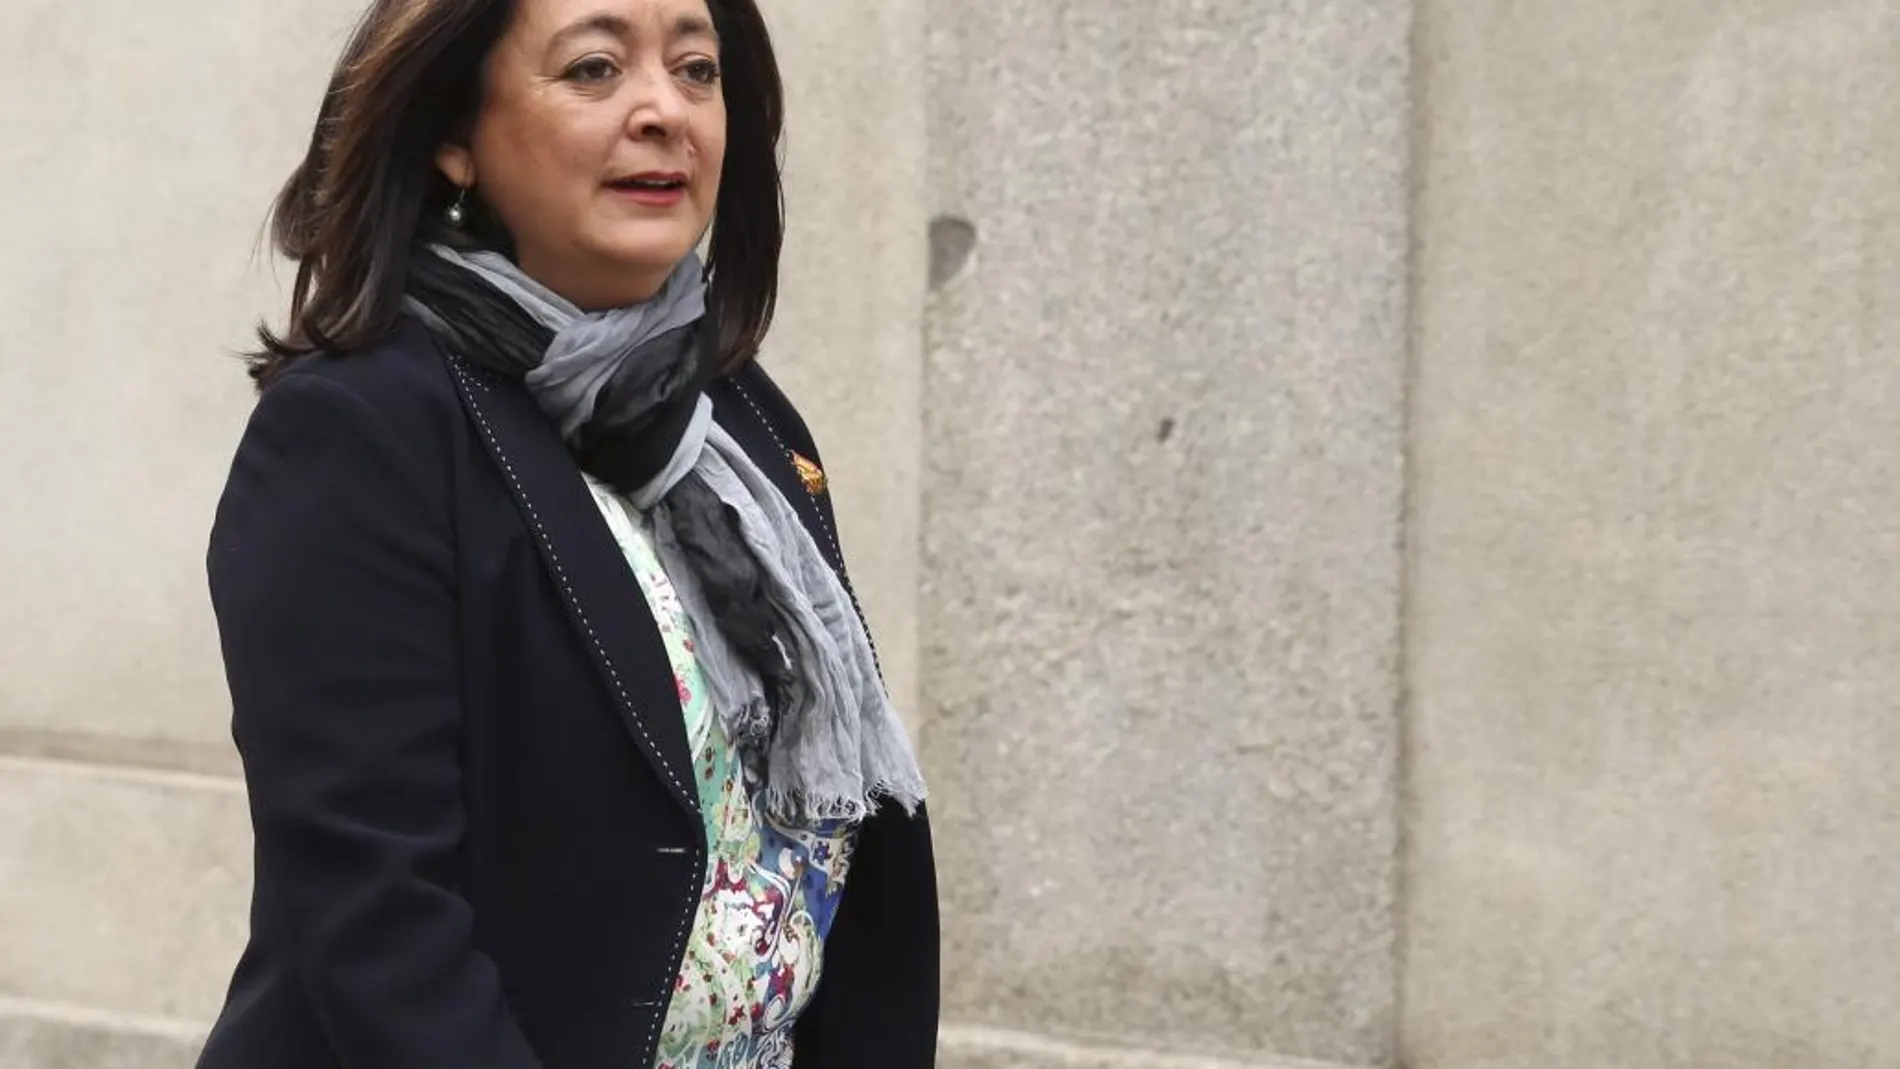 La senadora socialista y exconsejera de Presidencia de la Junta de Andalucía, Mar Moreno, a su llegada al Tribunal Supremo